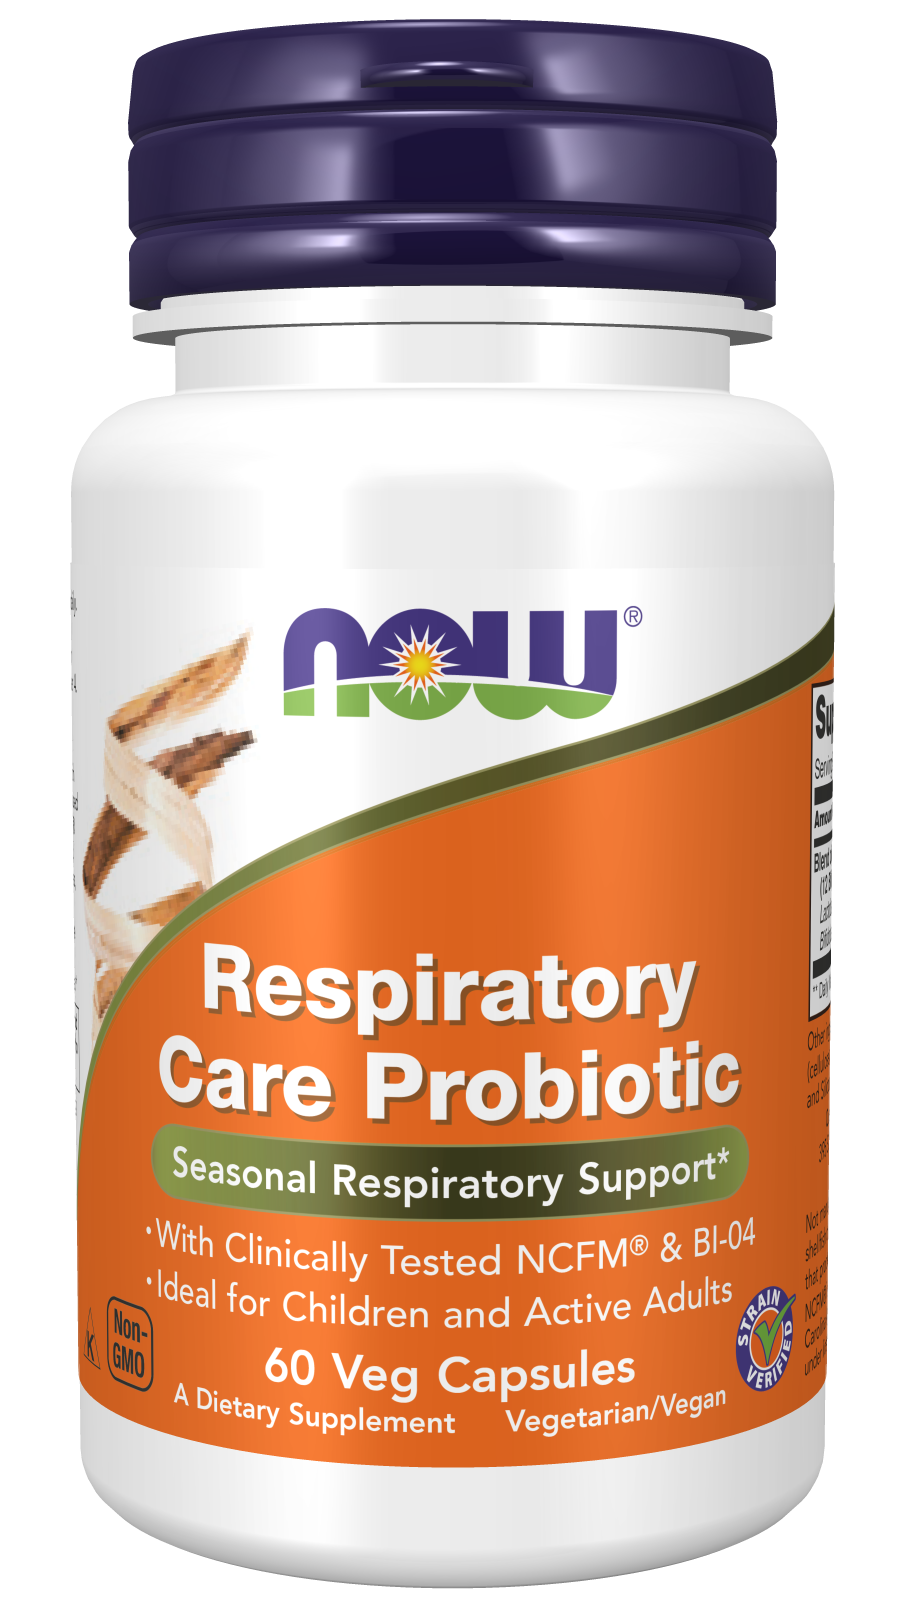 Respiratory Care Probiotic - 60 Veg Capsules